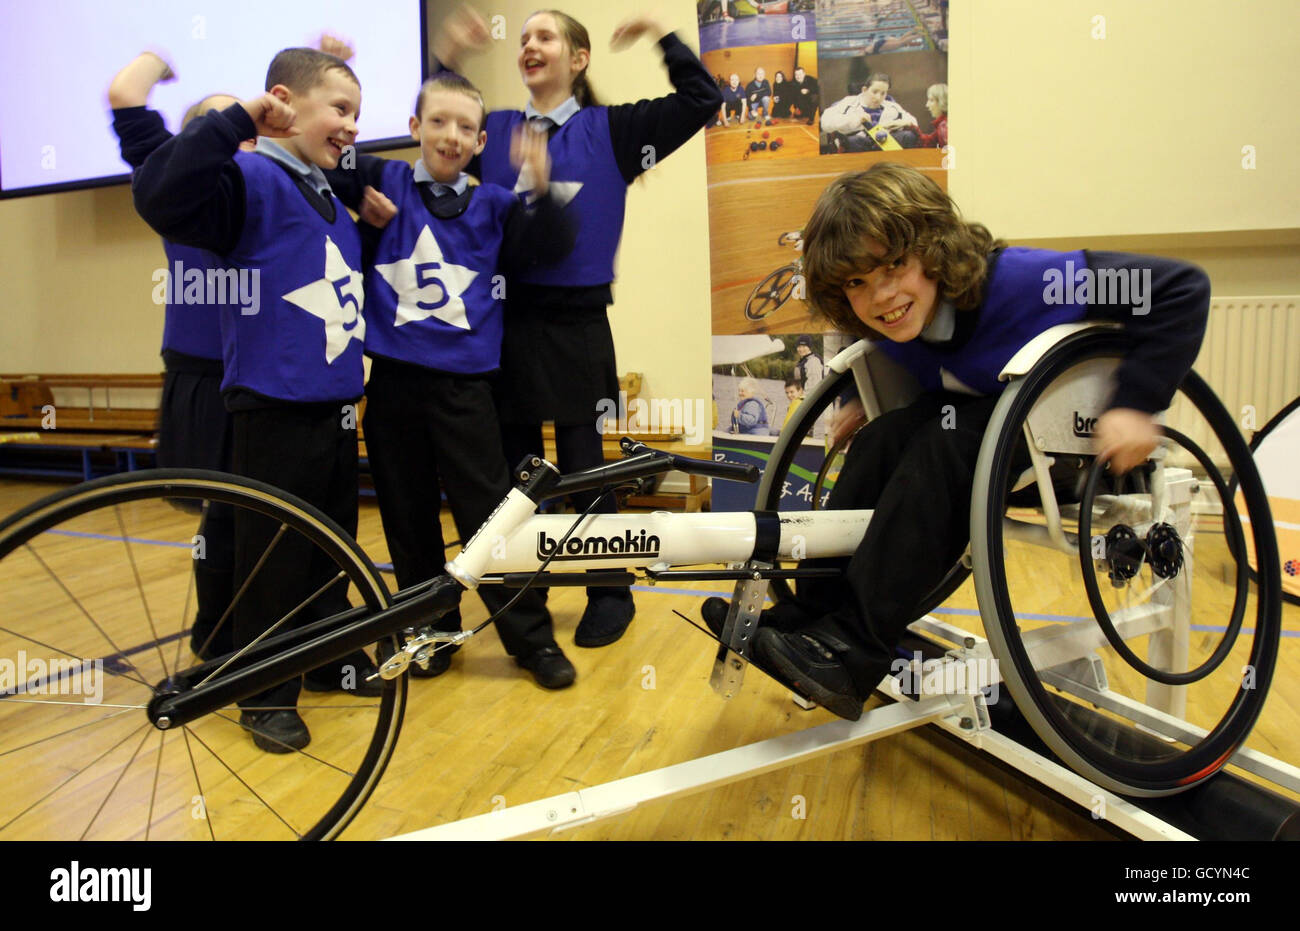 Cormac McGowan, de 10 años, un pupilo de cuerpo capaz de la Escuela Primaria Integrada Hazelwood en Belfast, participa en el '5 estrellas Disability sports challenge' ofrecido por Disability sports N.I. Foto de stock